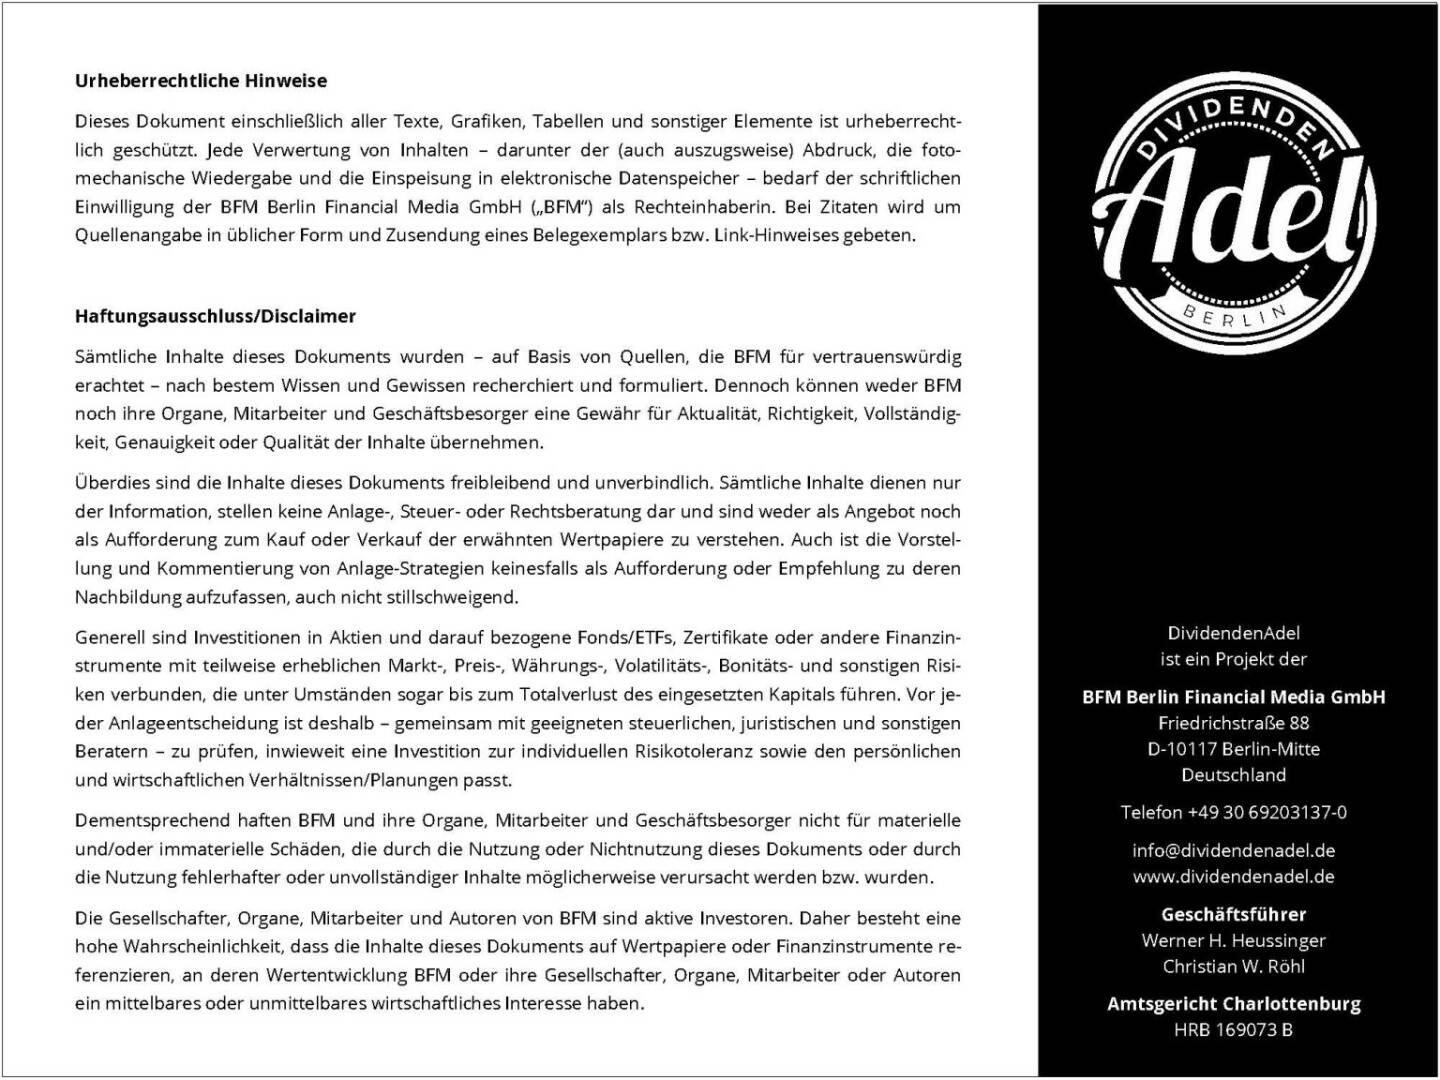 Dividendenstudie Österreich 2016 Urheberrechtliche Hinweise